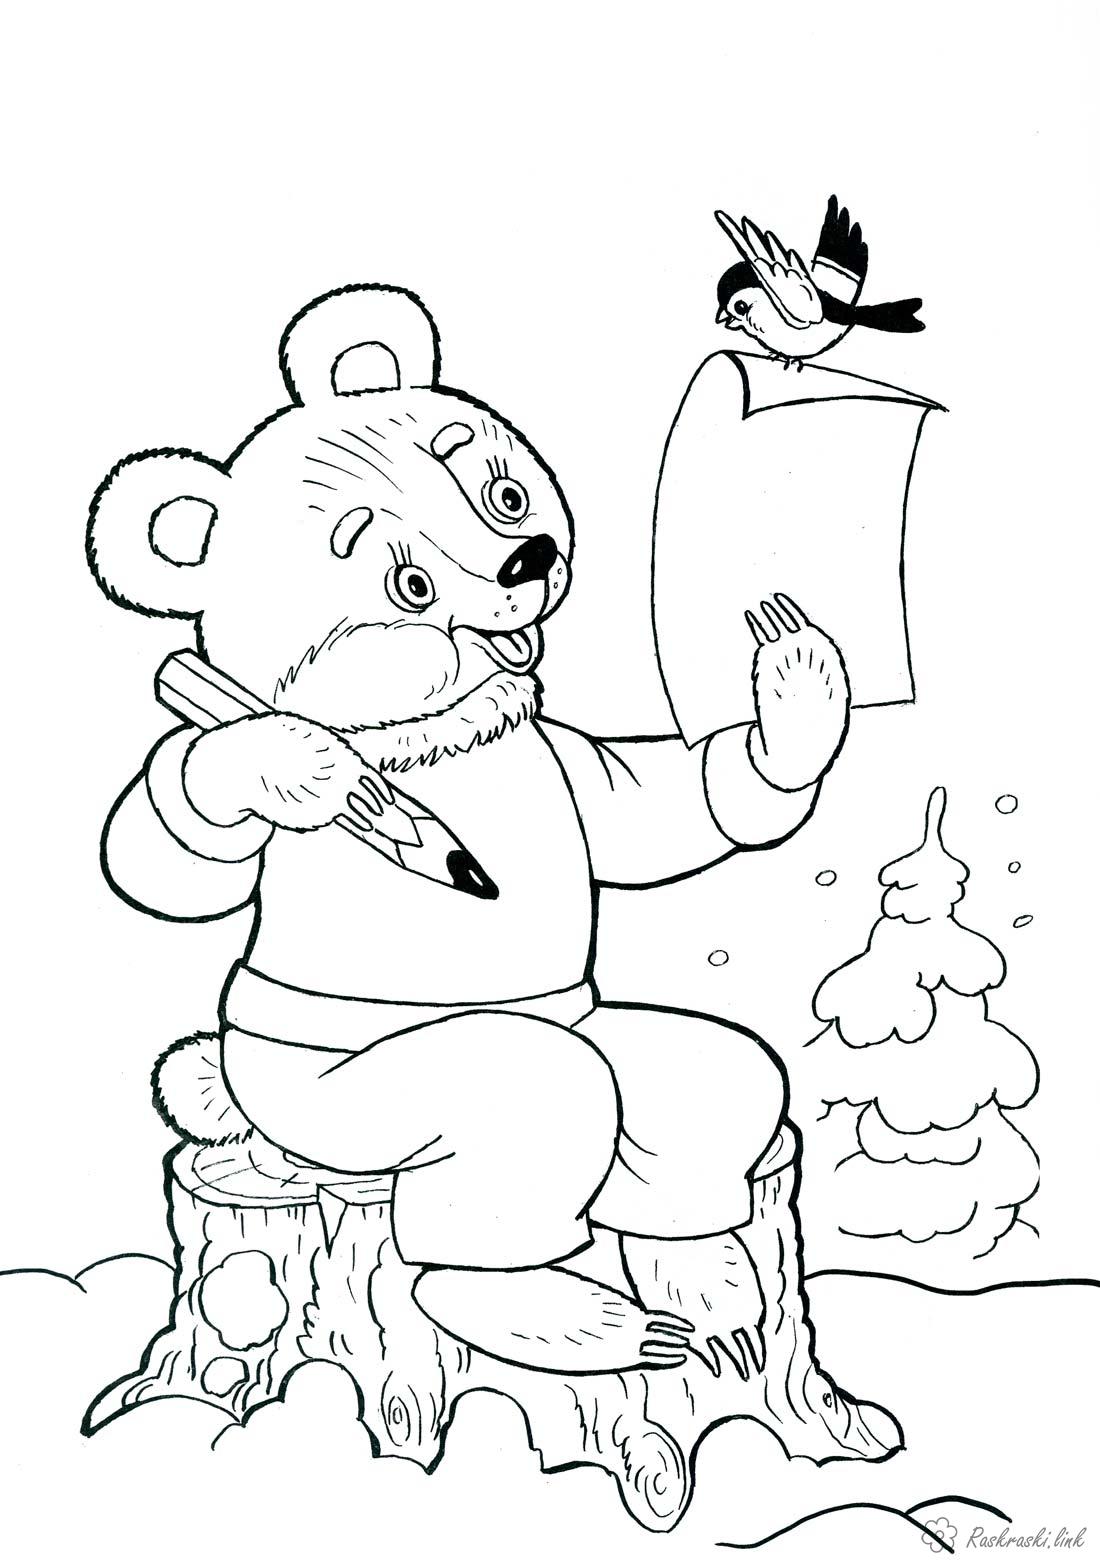 Розмальовки лист дитяча новорічна розфарбування, ведмедик пише лист Діду Морозу